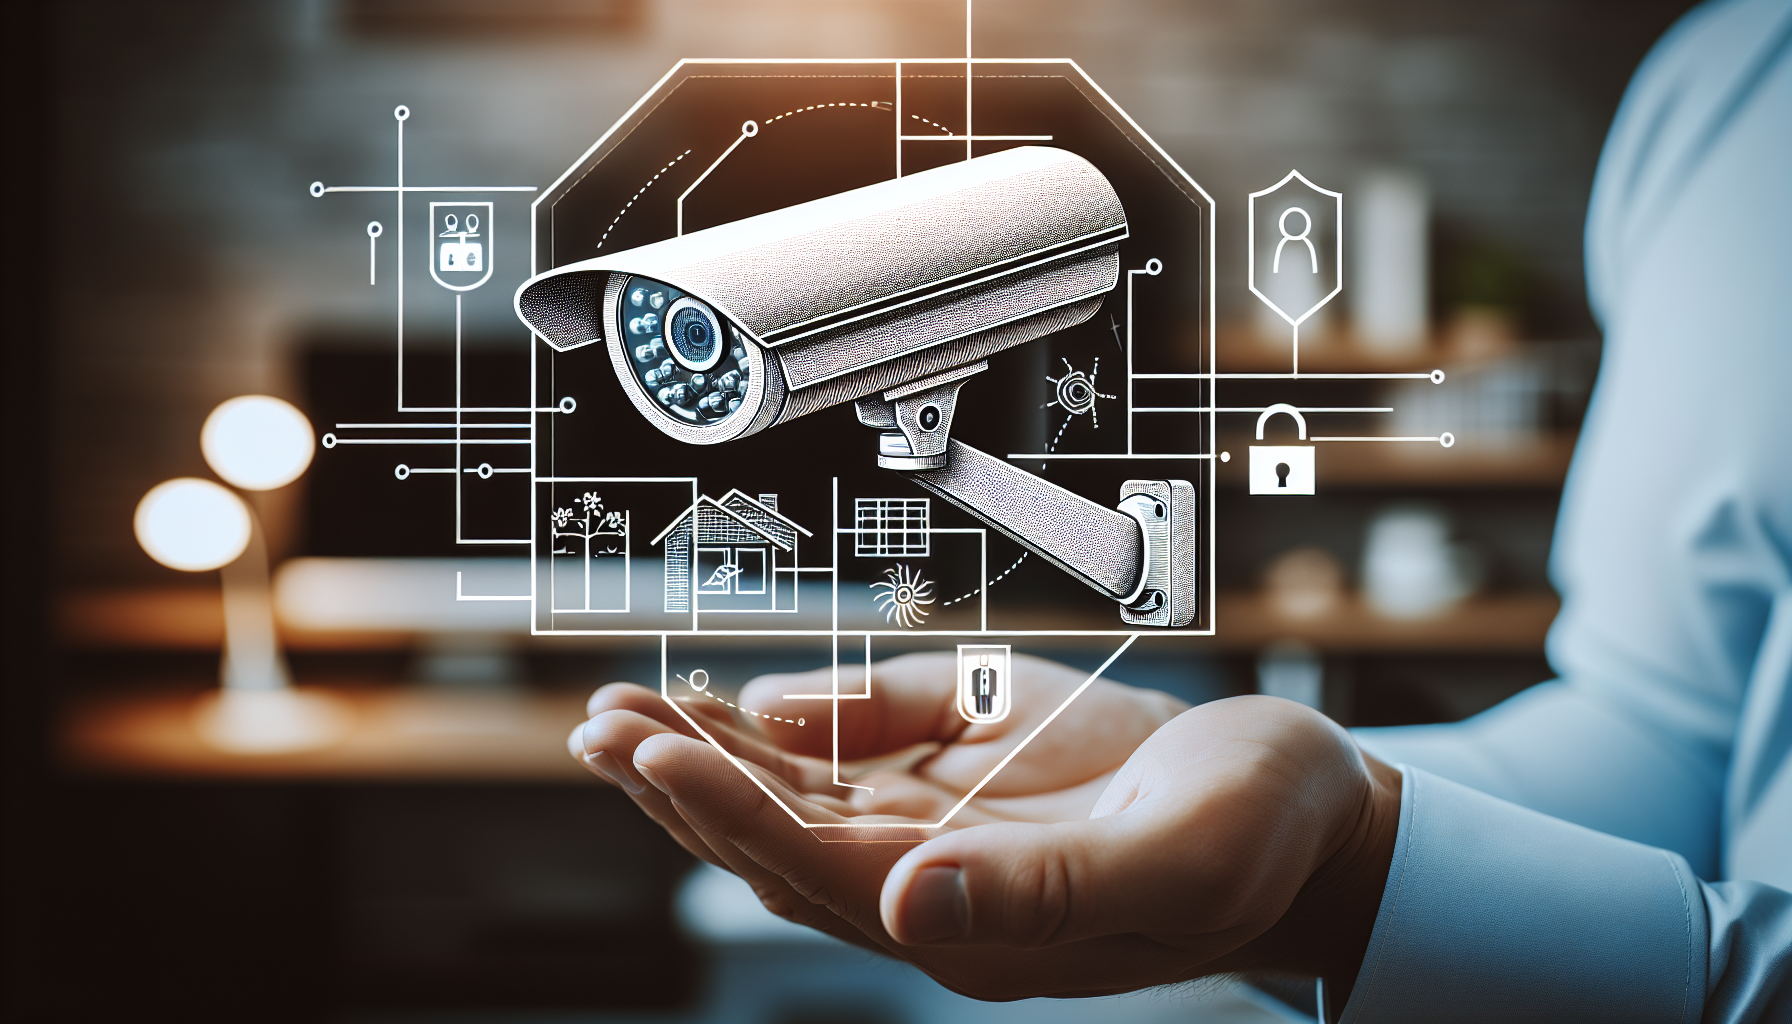 CCTV co to jest i jak skutecznie zabezpieczyć swoją przestrzeń za pomocą monitoringu wizyjnego